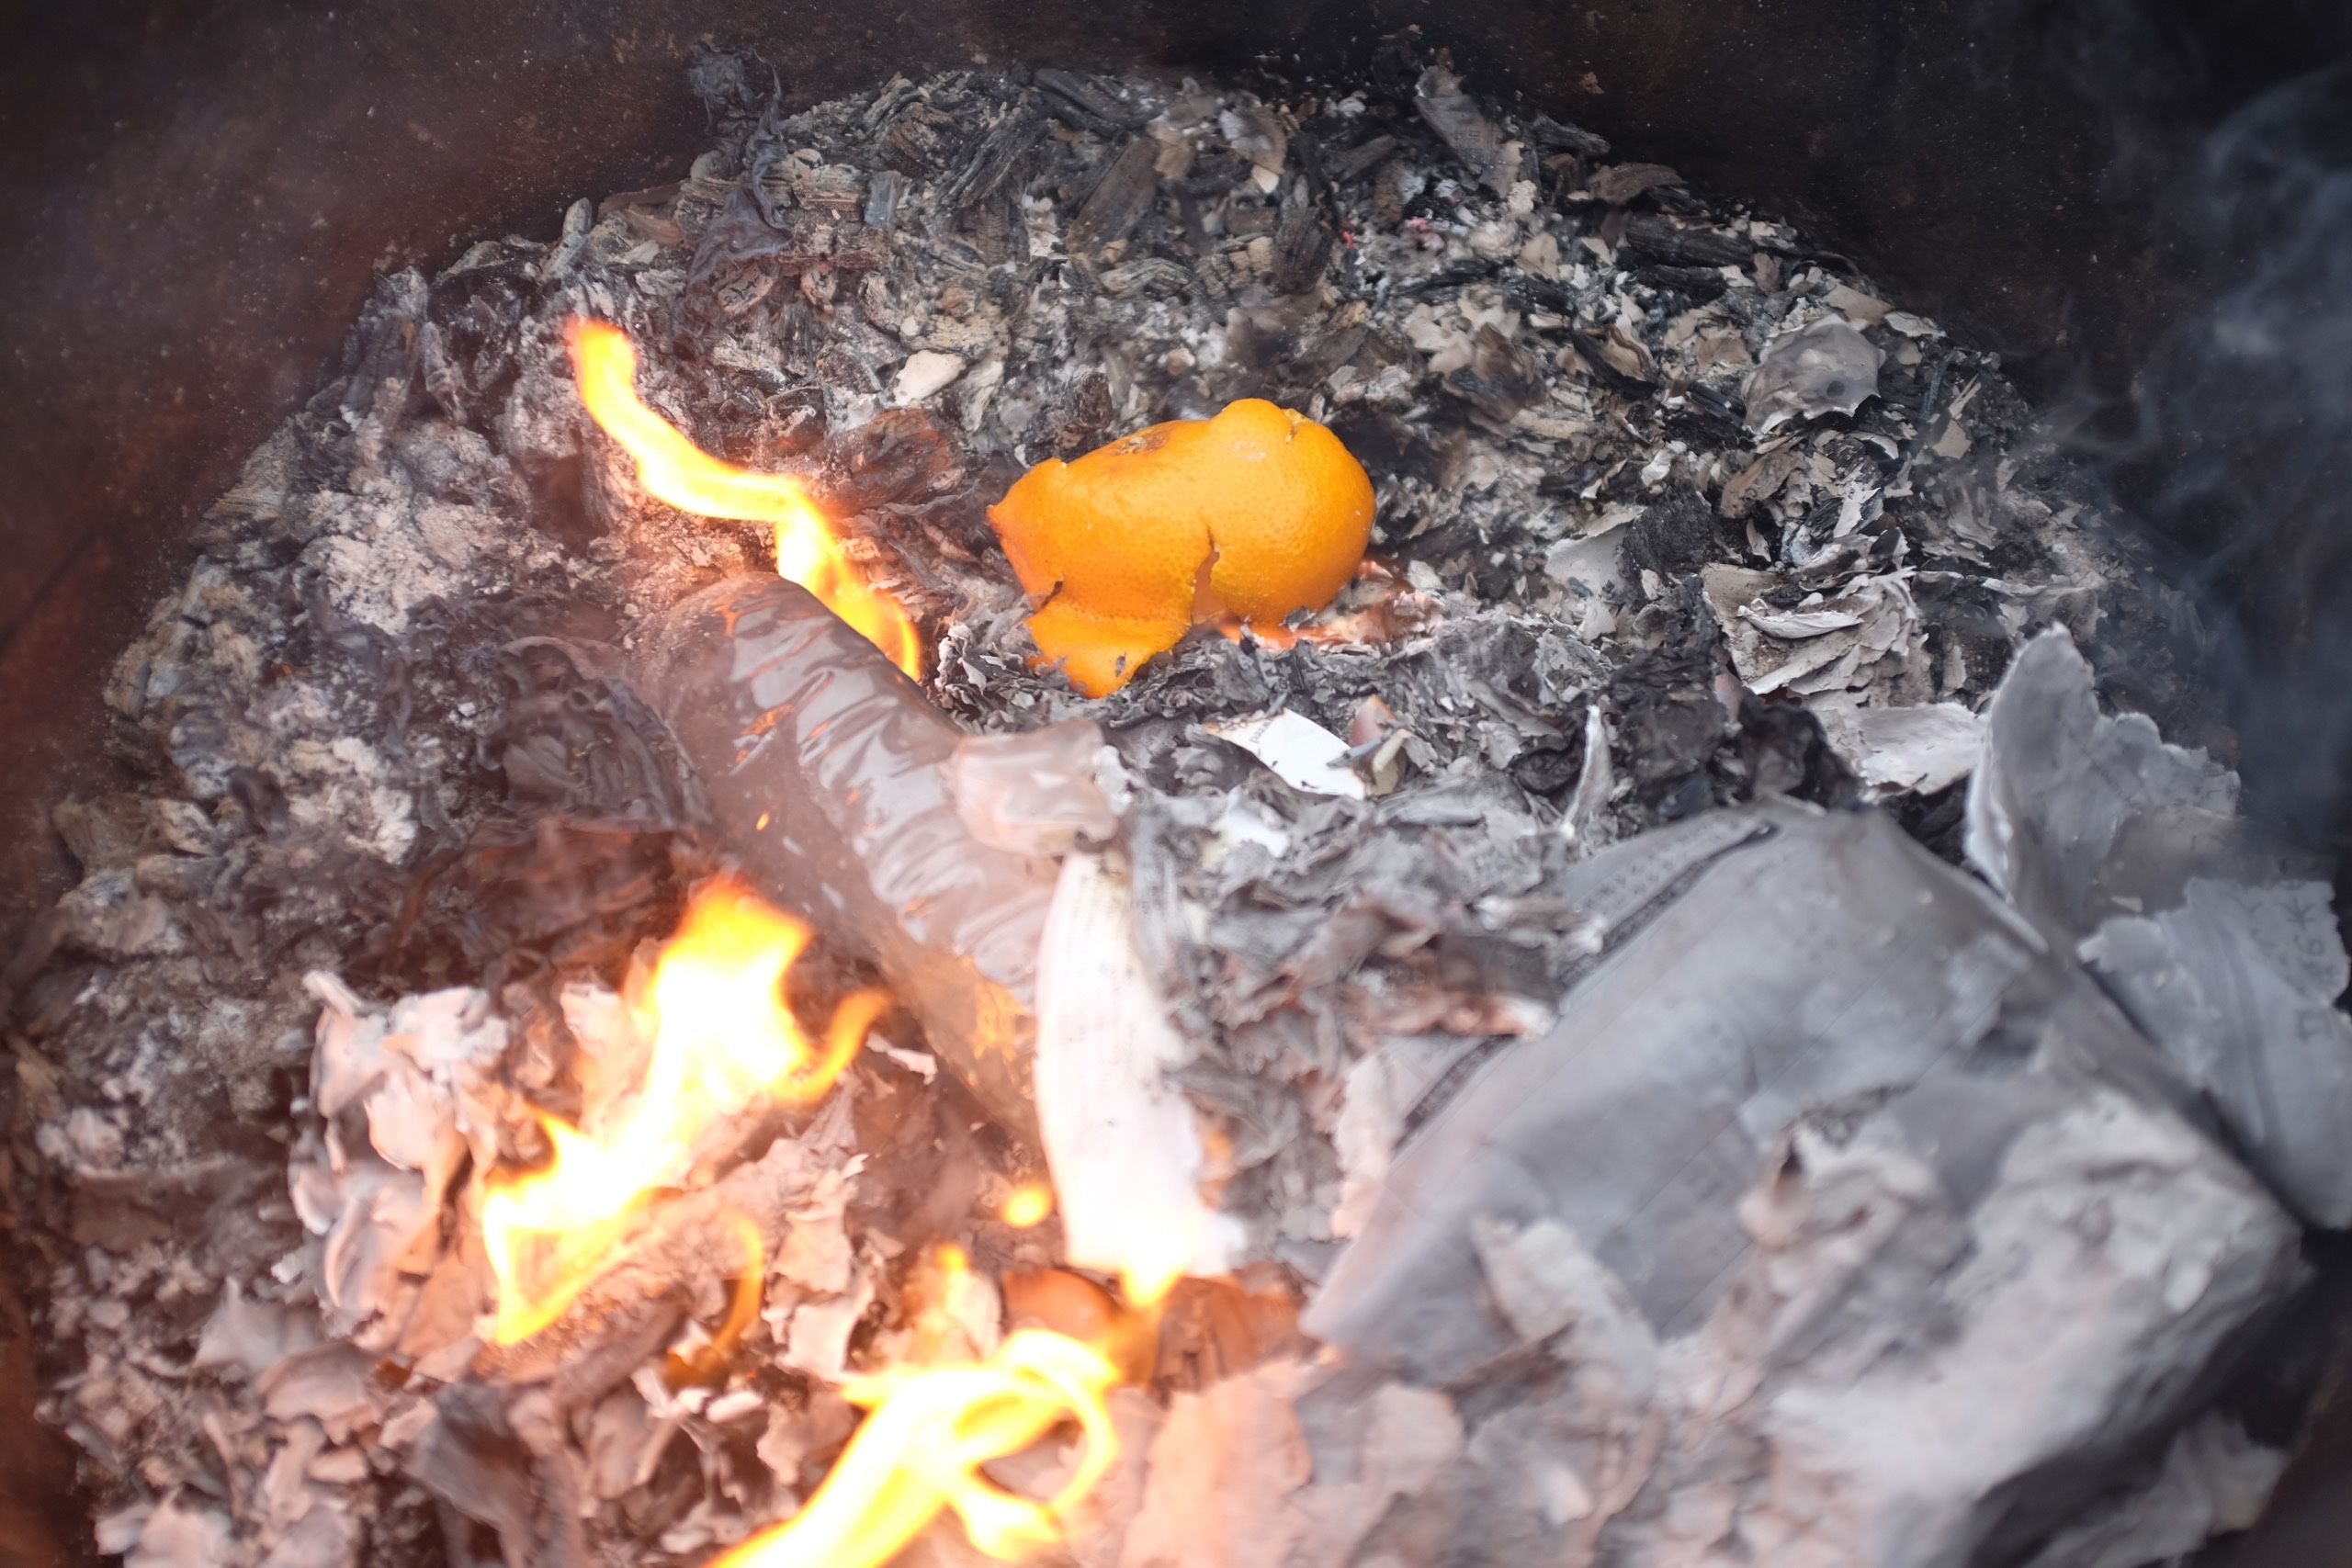 Orange peels thrown on a trash fire in a metal drum.